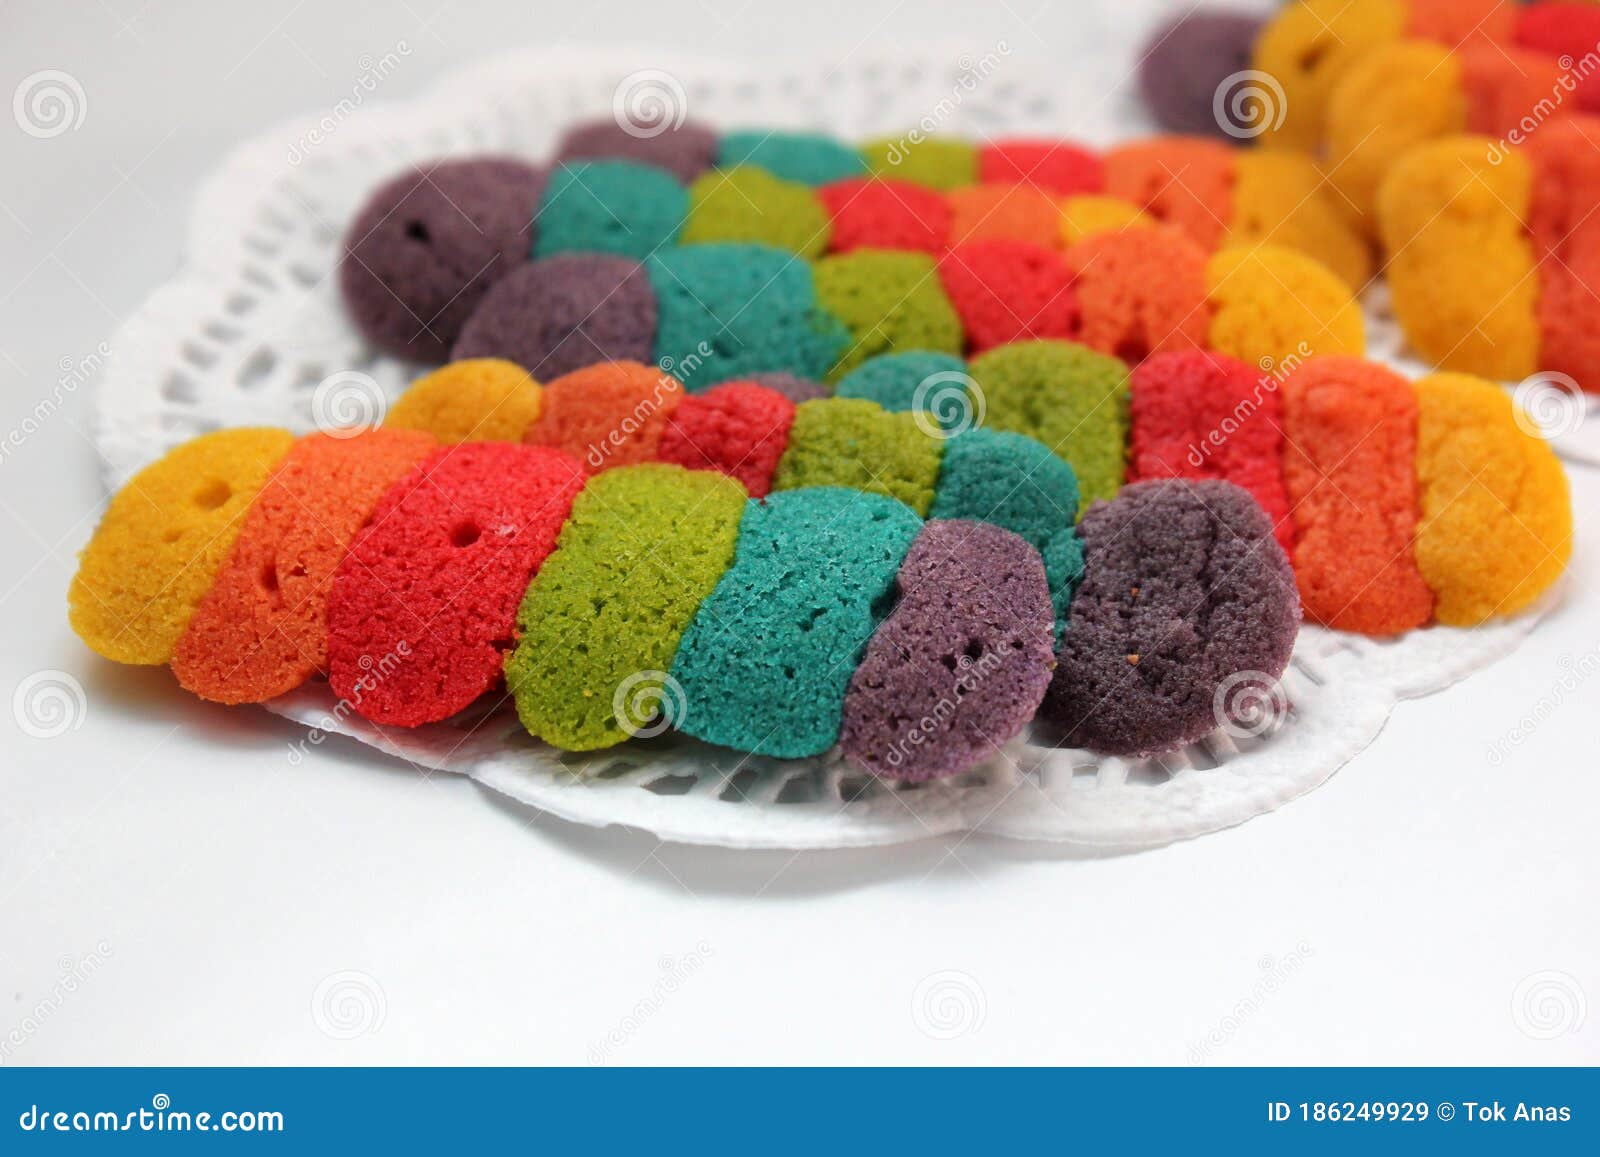 Biskut Pelangi Lidah Kucing` is a Colorful `Biskut Pelangi Lidah 